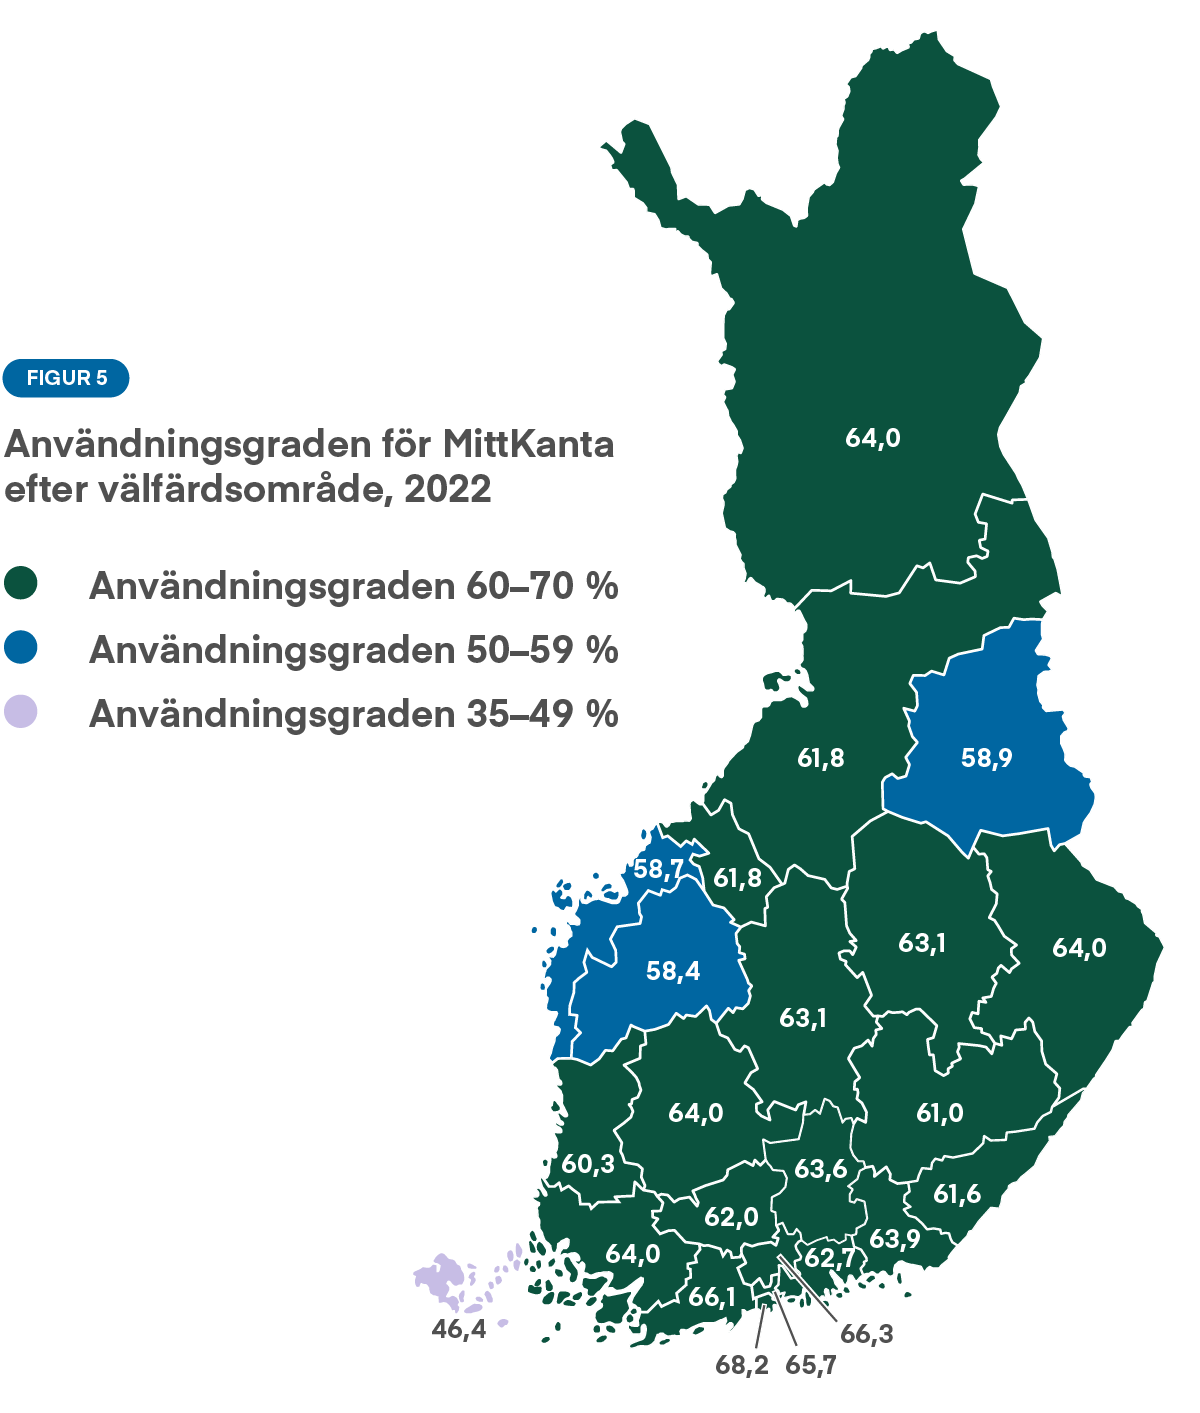 Graf: Bild 5 visar användningsgraden för MittKanta efter välfärdsområde. Inom de flesta välfärdsområdena används MittKanta av 60–70 procent av invånarna. På Åland används MittKanta av 46,4 procent. Nyland har den högsta användningsgraden.